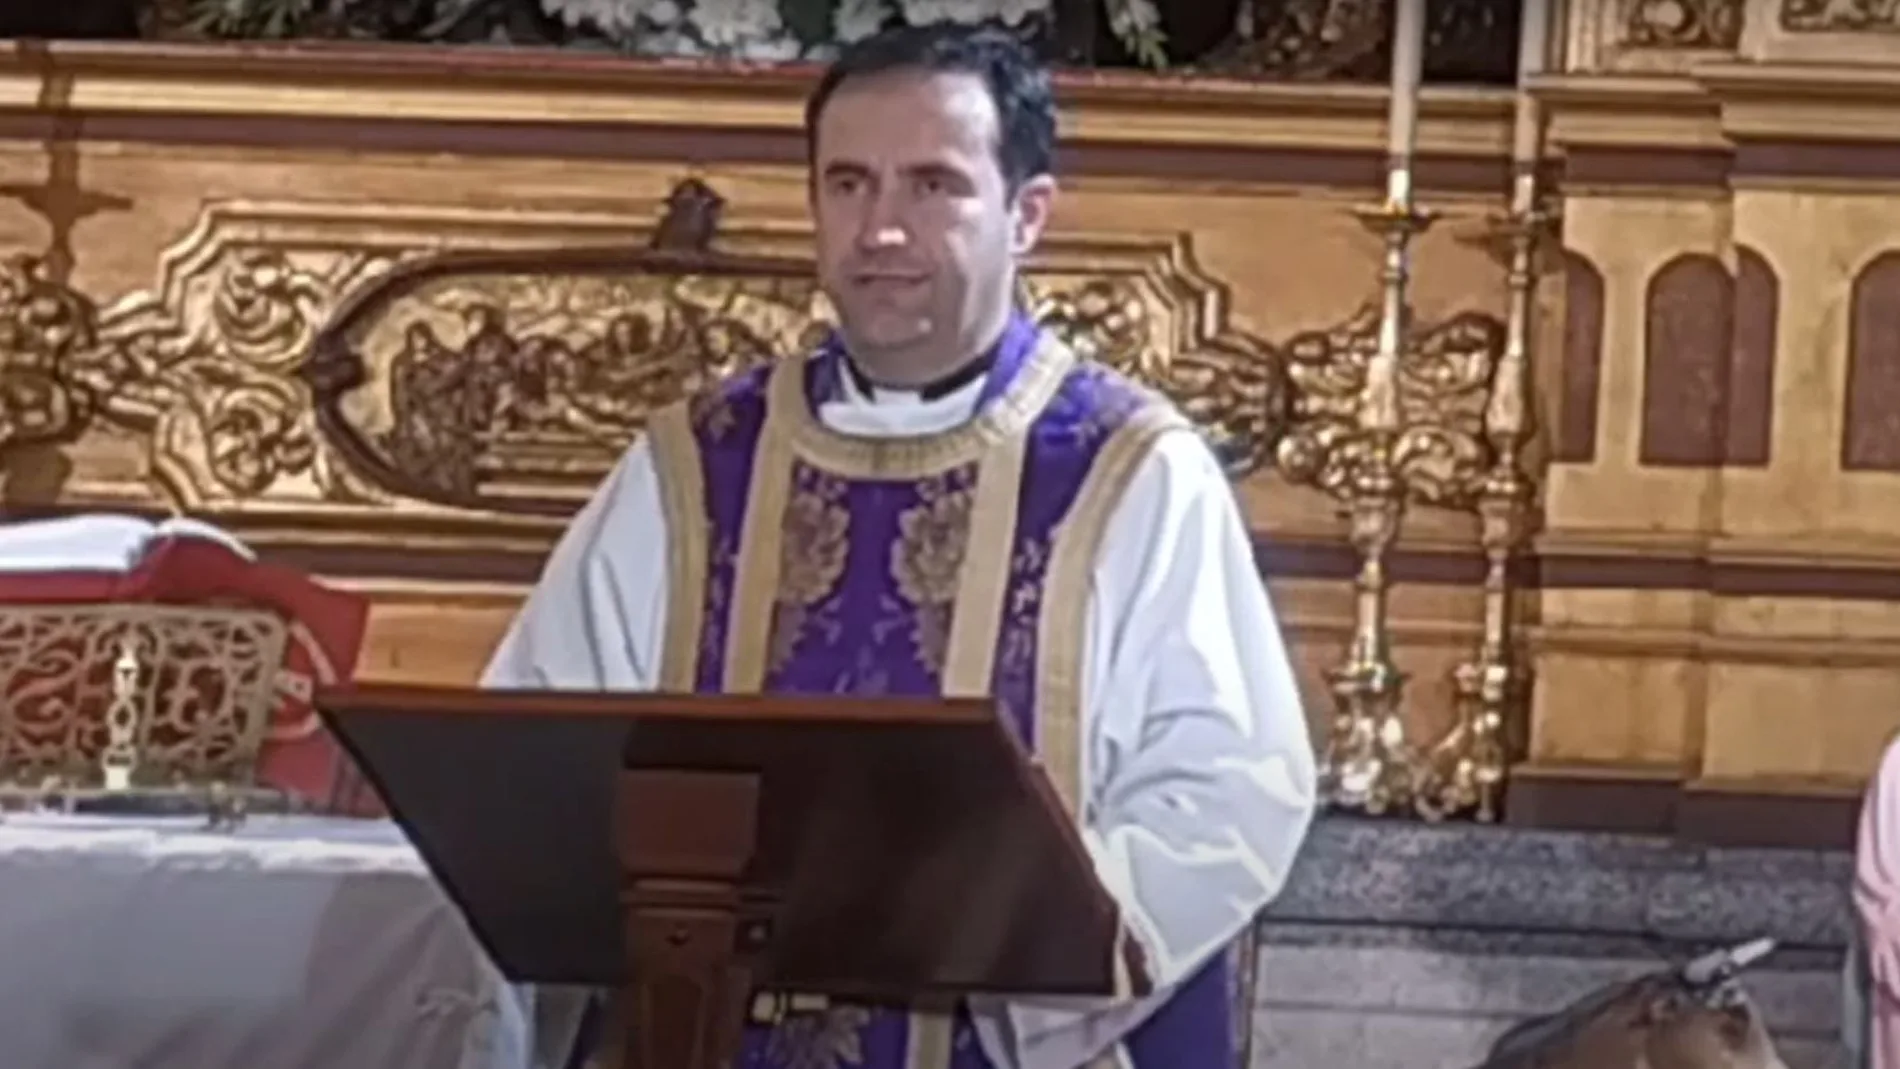 El sacerdote Óscar Martín Biezma